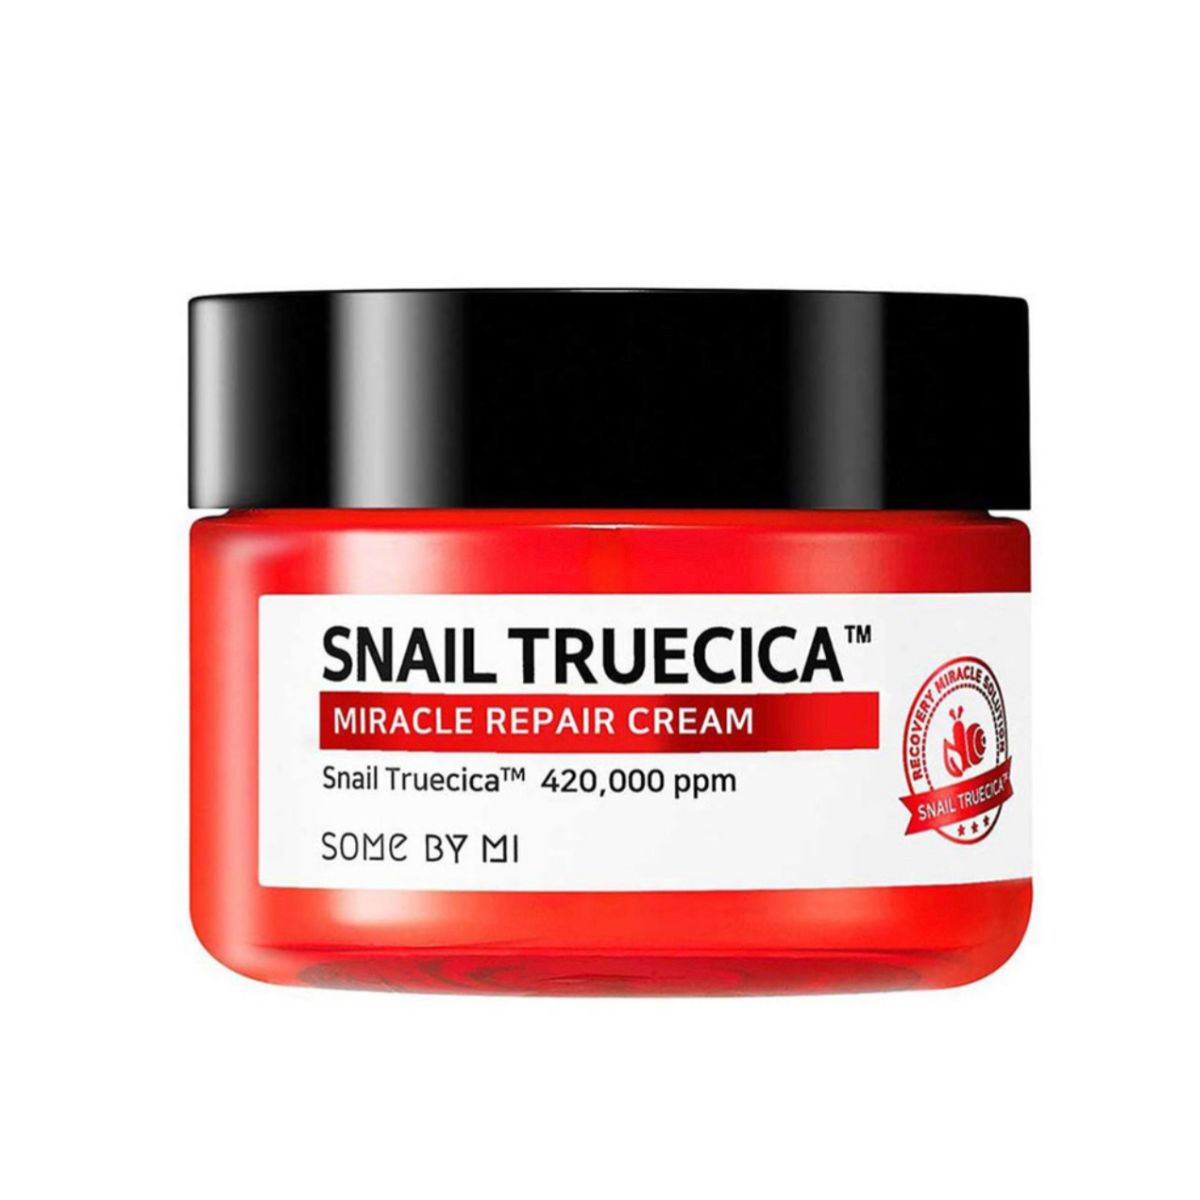 کرم اسنیل تروسیکا سام بای می ترمیم سد دفاعی پوست Snail Truecica Miracle Repair Cream